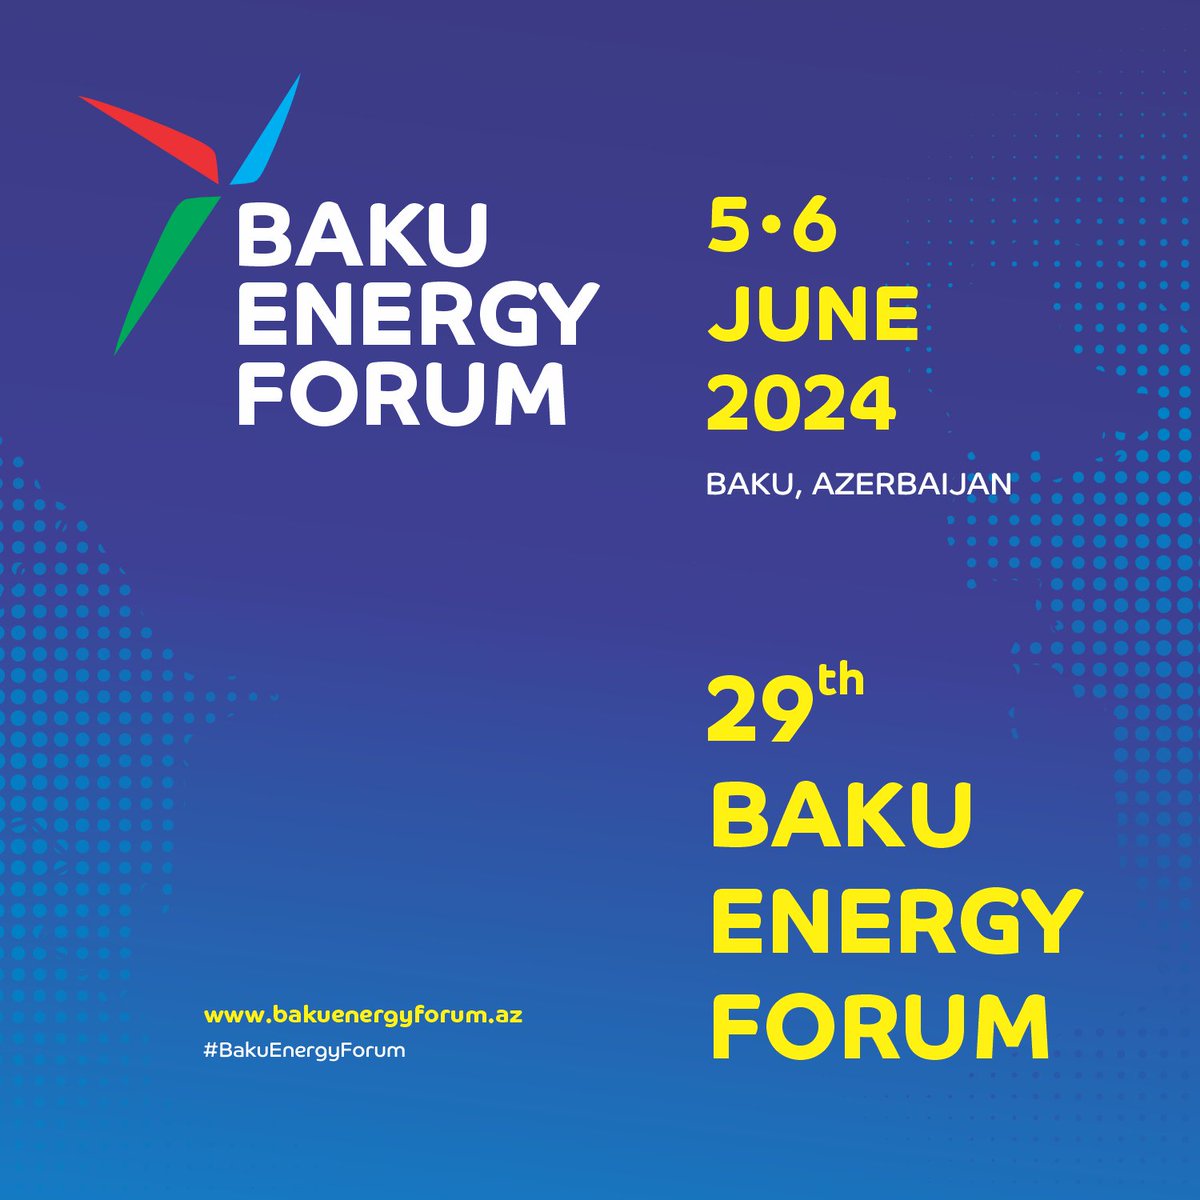 🇦🇿 29-cu Bakı Enerji Forumunun keçirilmə tarixini sizə təqdim edirik. 2024-cü ildə görüşənədək!
-
🇬🇧 We present you the date of the 29th Baku Energy Forum. See you in 2024!

#BakuEnergyForum #BakuEnergyWeek #Seeyounextyear